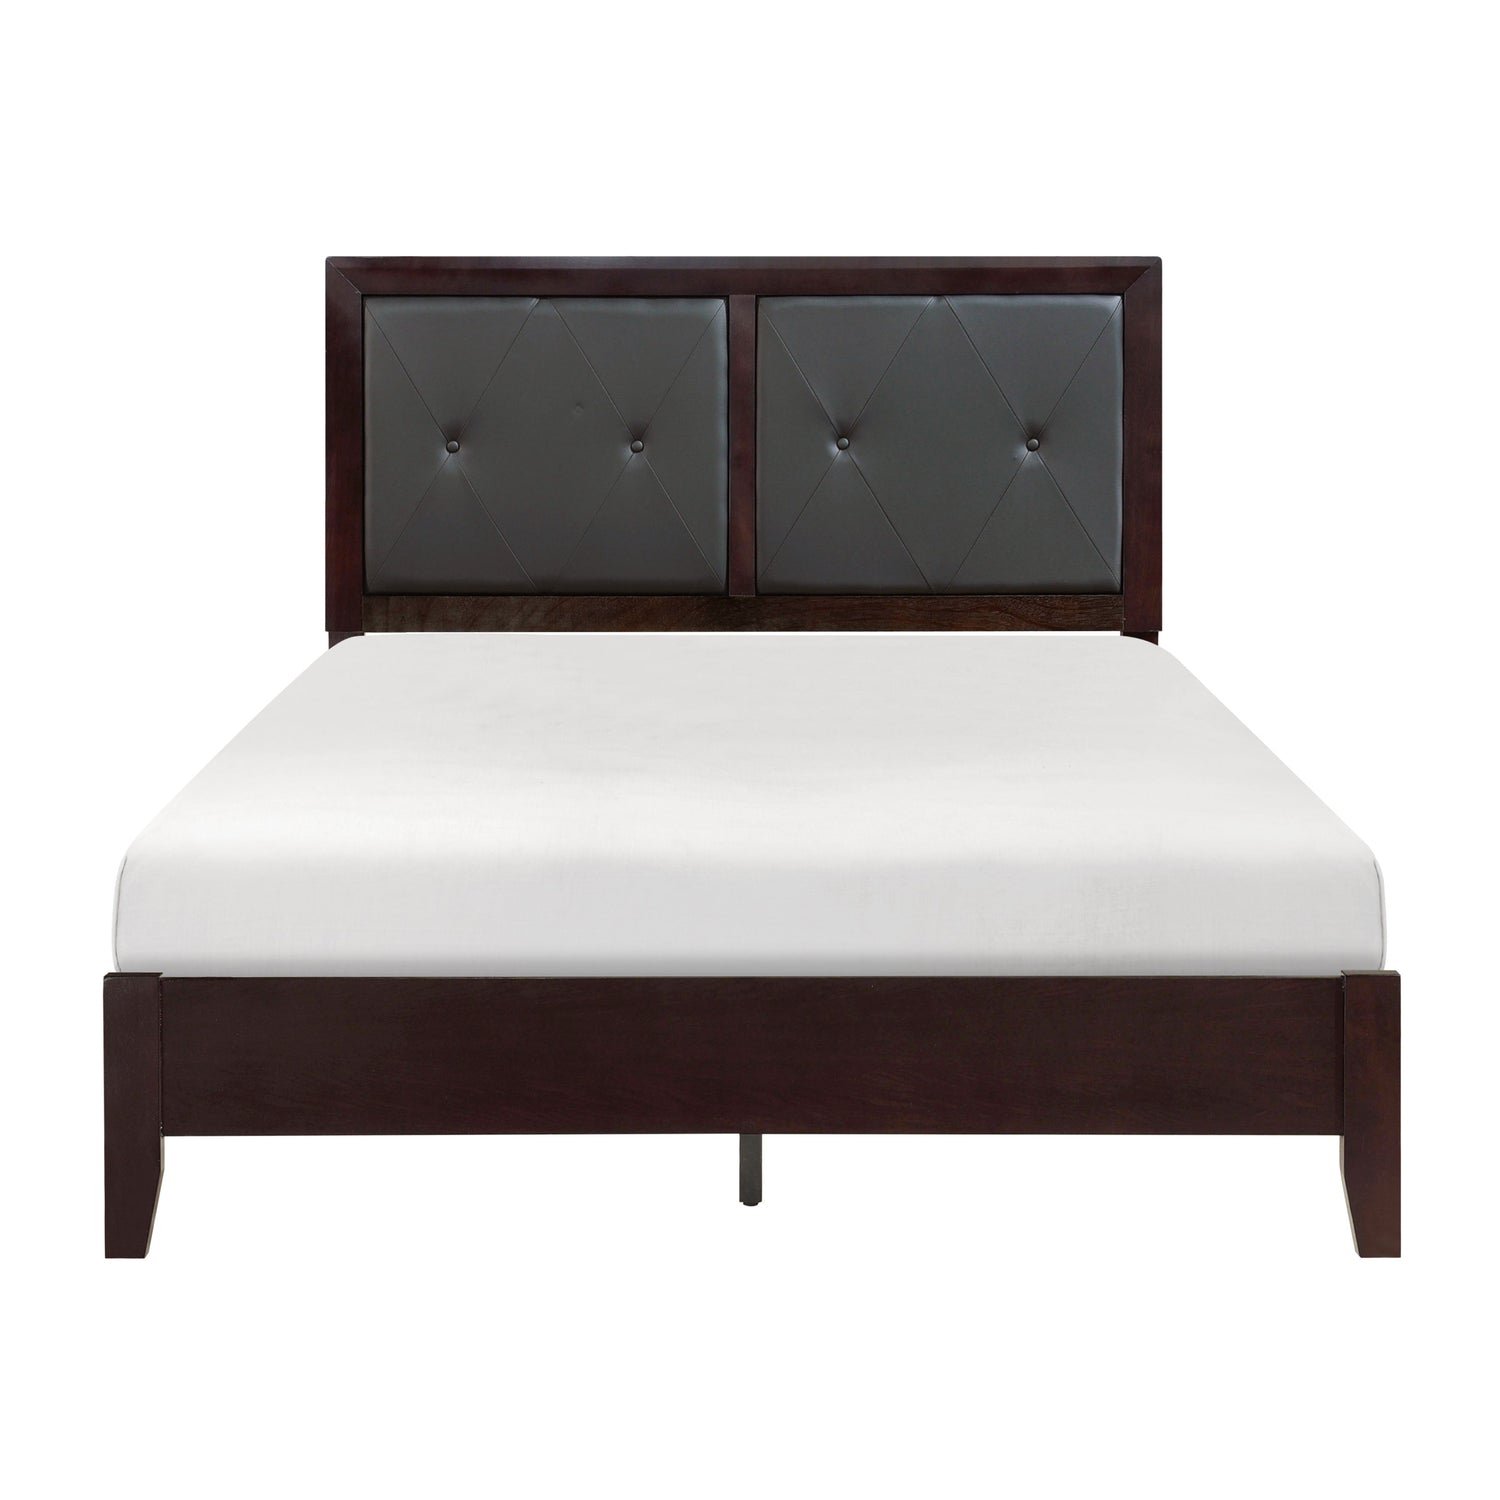 Edina Espresso Upholstered Panel Bedroom Set - SET | 2145K-1 | 2145K-2 | 2145K-3EK | 2145-5 | 2145-6 | 2145-4 | 2145-9 - Bien Home Furniture &amp; Electronics